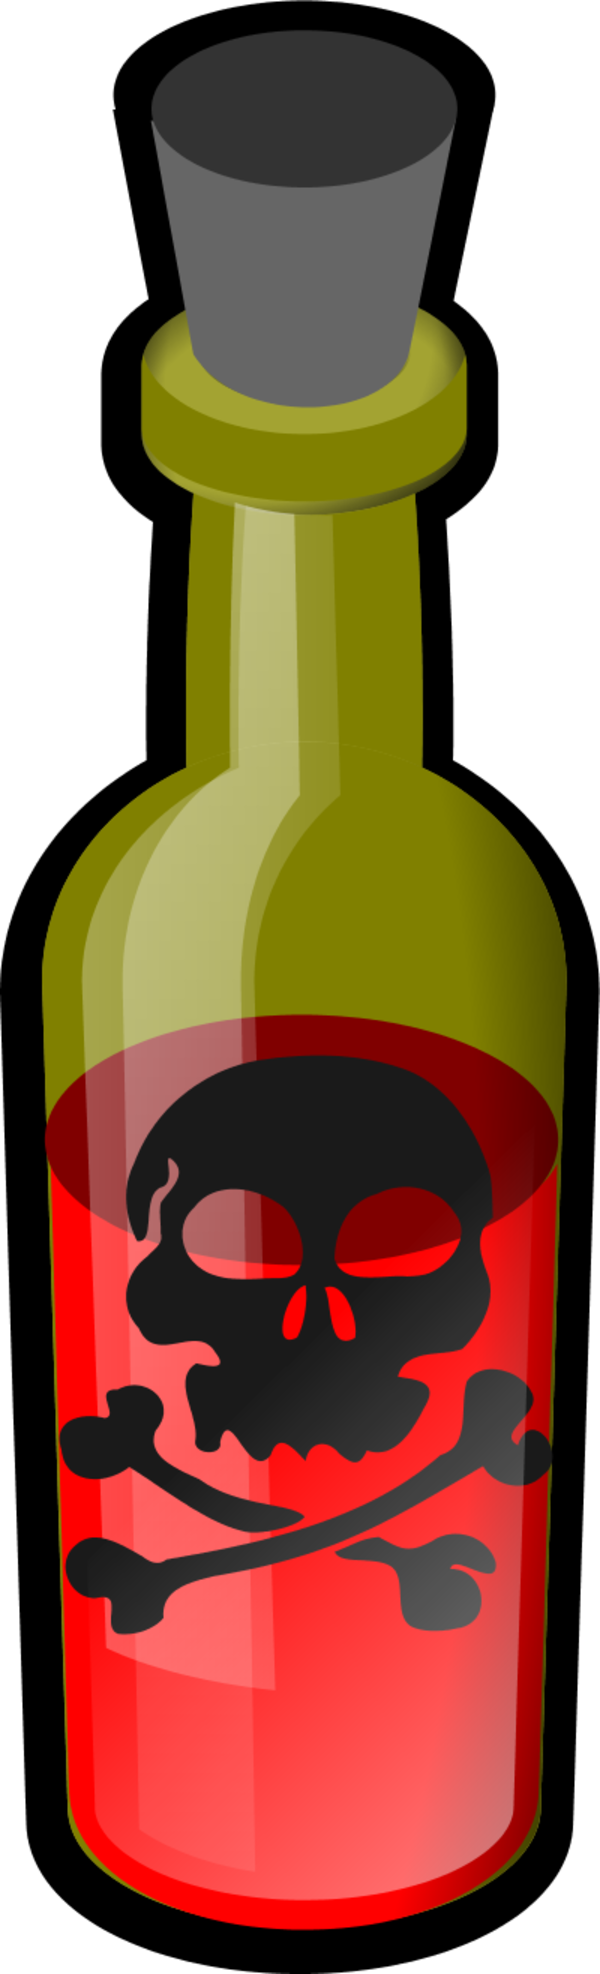 Poison Bottle Black Simple Icon - Poison Bottle Clip Art (600x1974)